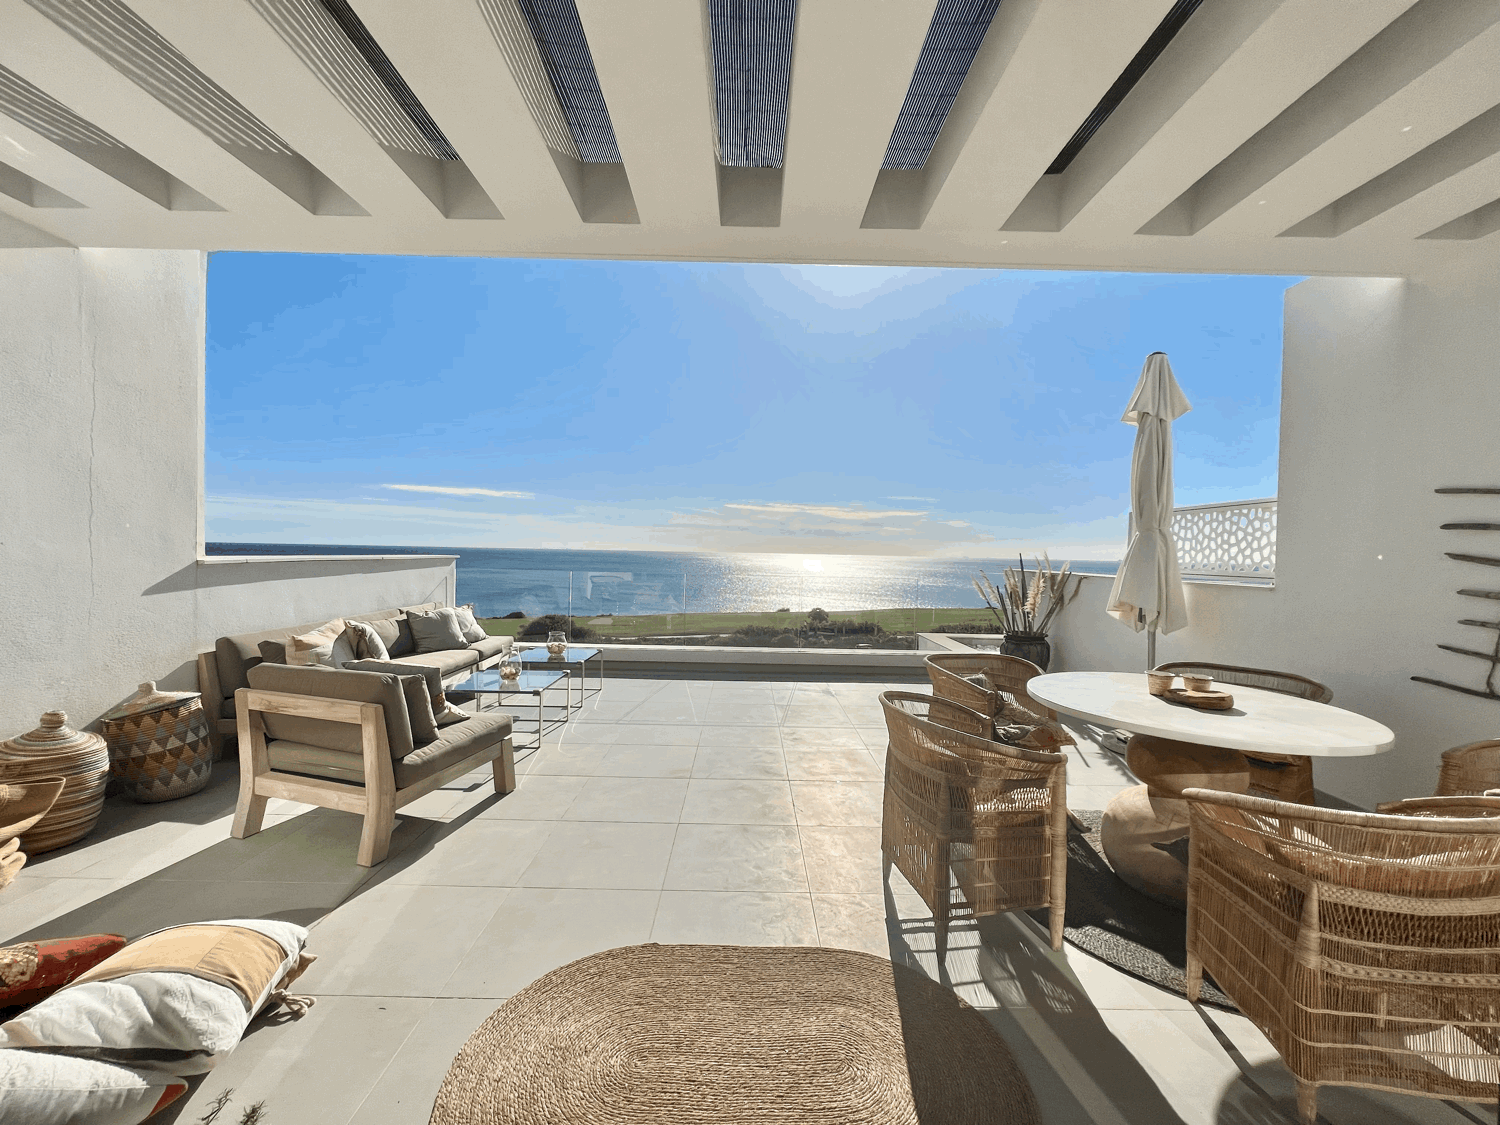 Sensacional ático con fabulosas vistas panorámicas al mar , Gibraltar y Faro Carboneras